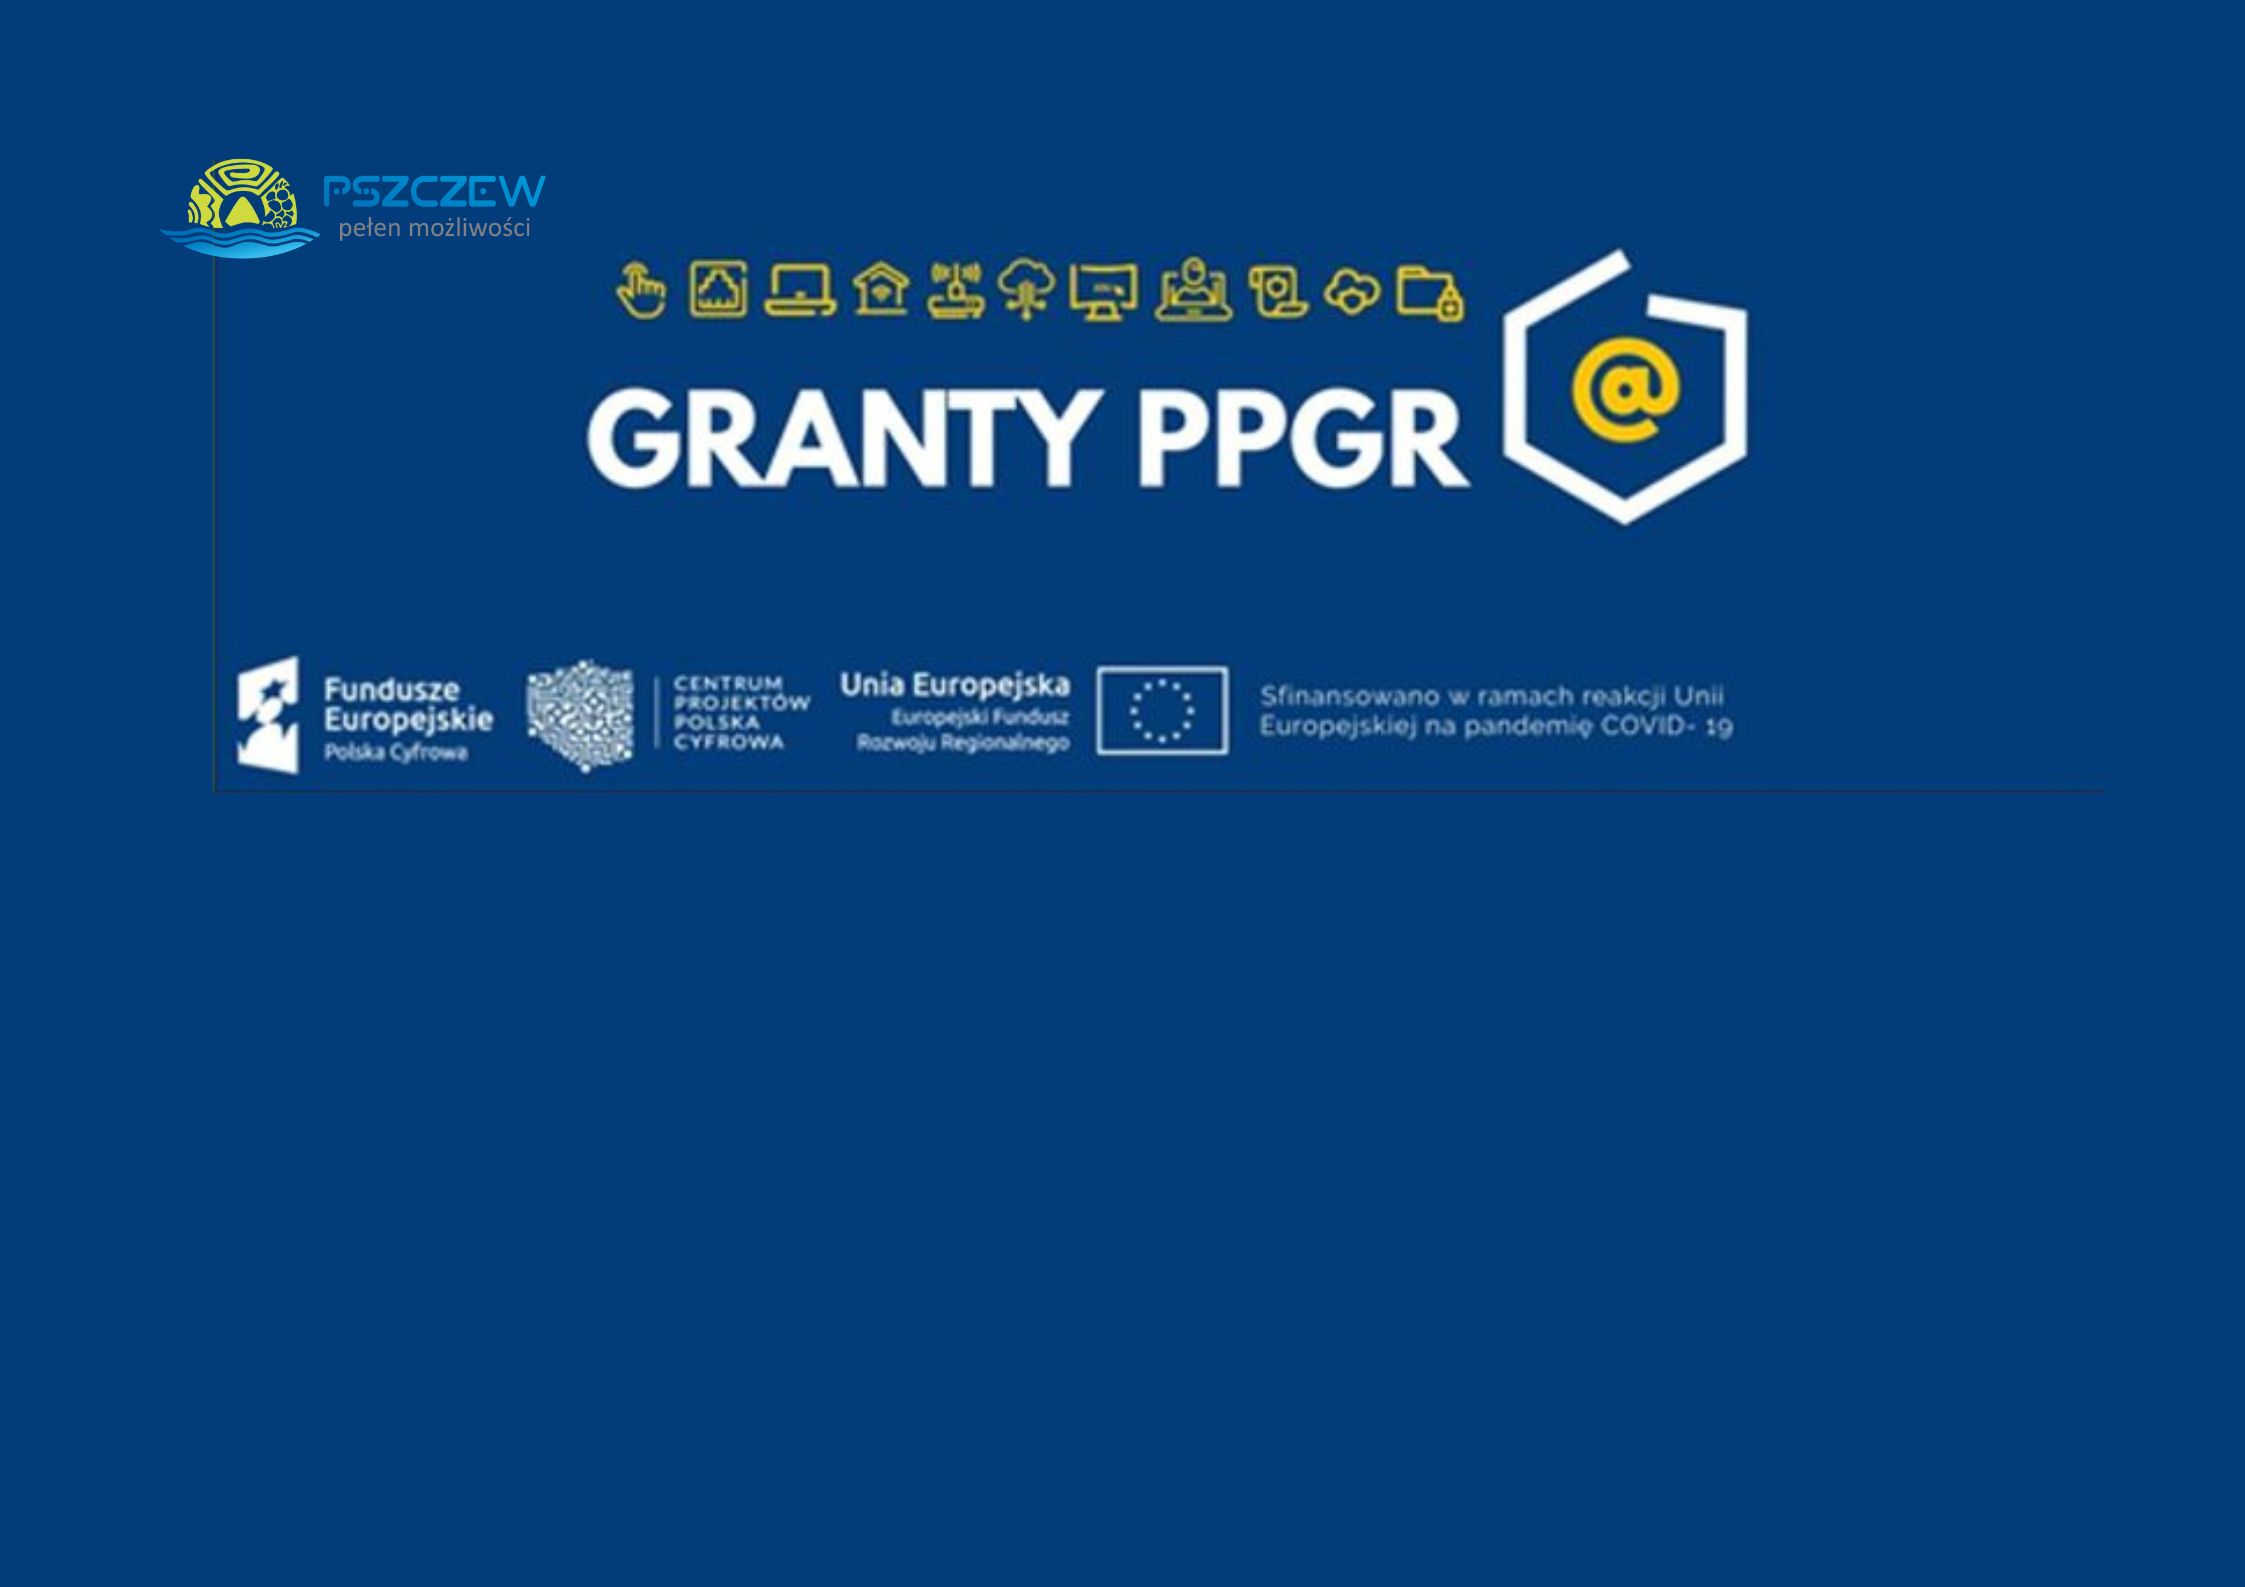 Granty PPGR – dofinansowanie dla gminy Pszczew